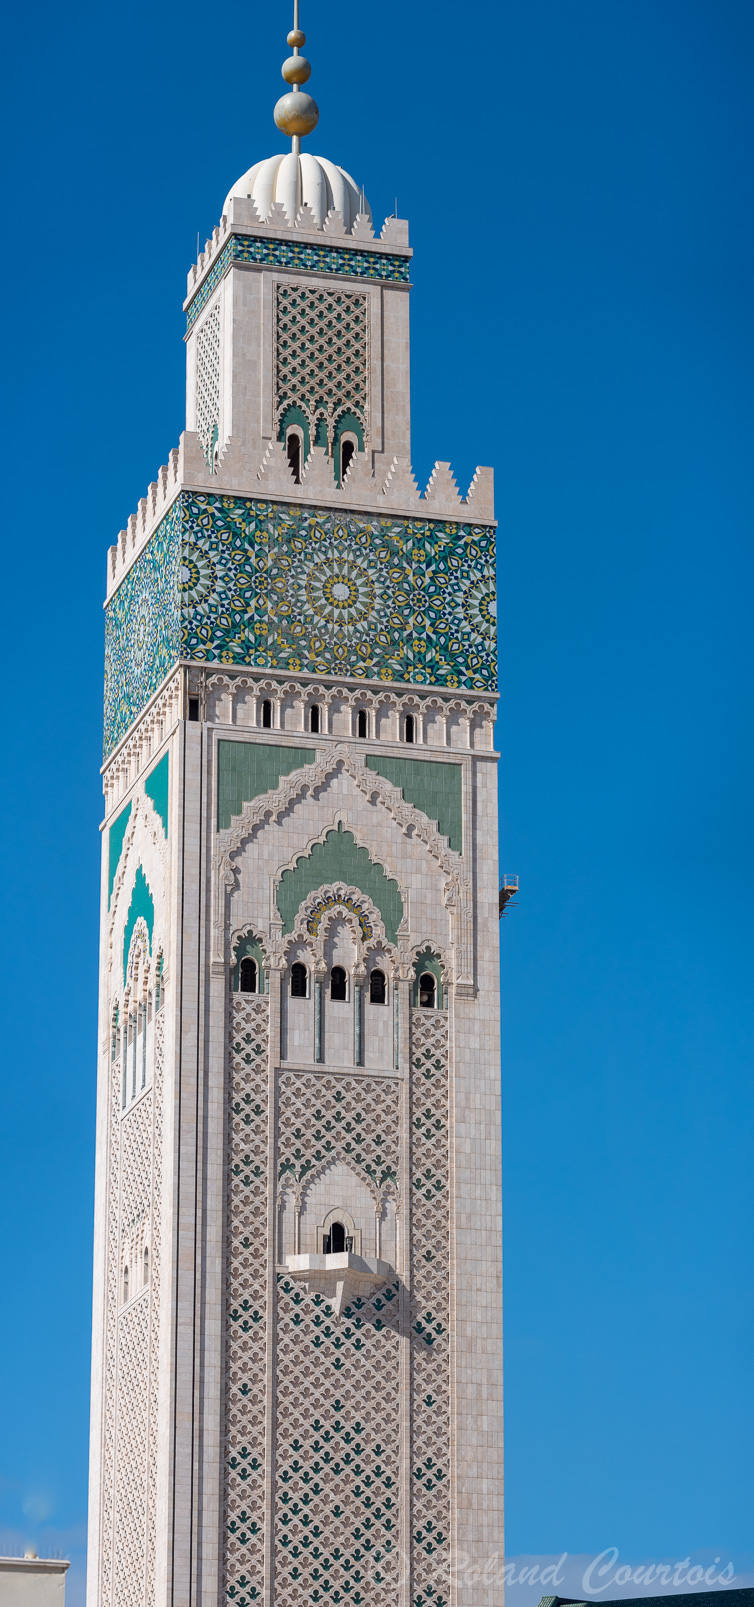 Le minaret est haut de 210 mètres.